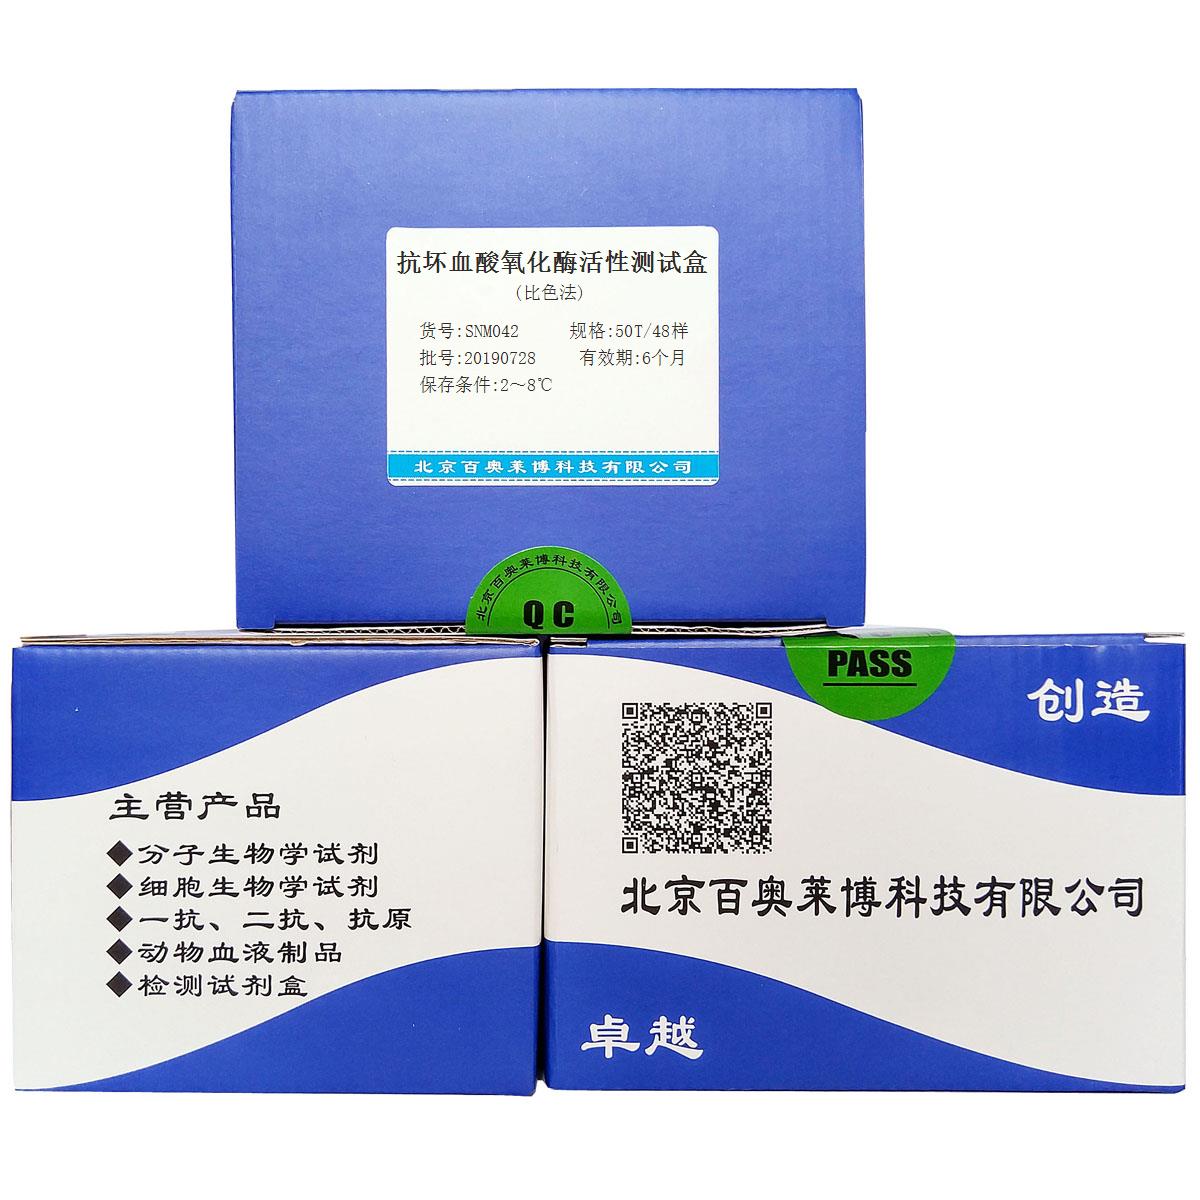 抗坏血酸氧化酶活性测试盒(比色法)北京供应商